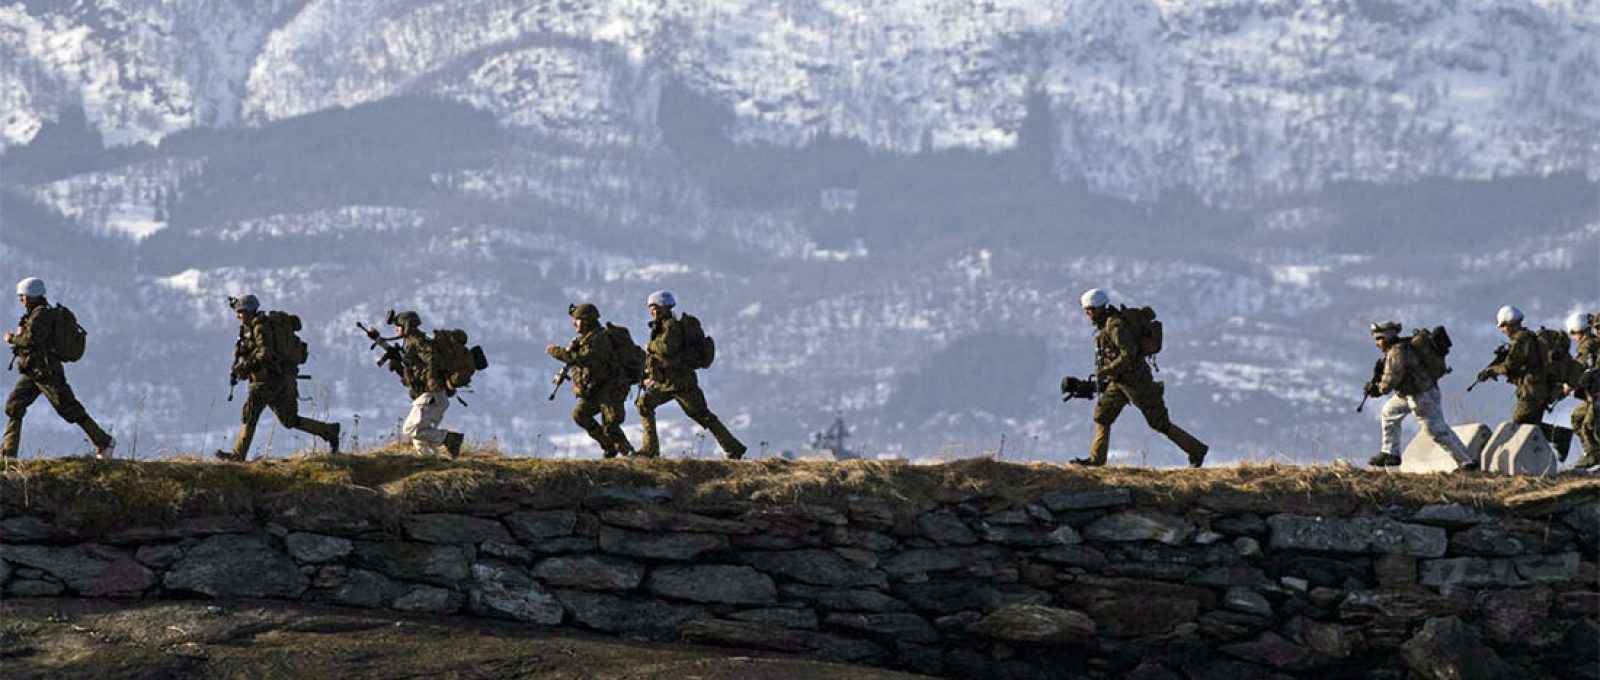 Militares dos EUA no Cold Response, exercício militar liderado pela Noruega do qual participam a OTAN e países parceiros, em Sandstrand, no Ártico norueguês, em 21 de março de 2022 (Jonathan Nackstrand/AFP).